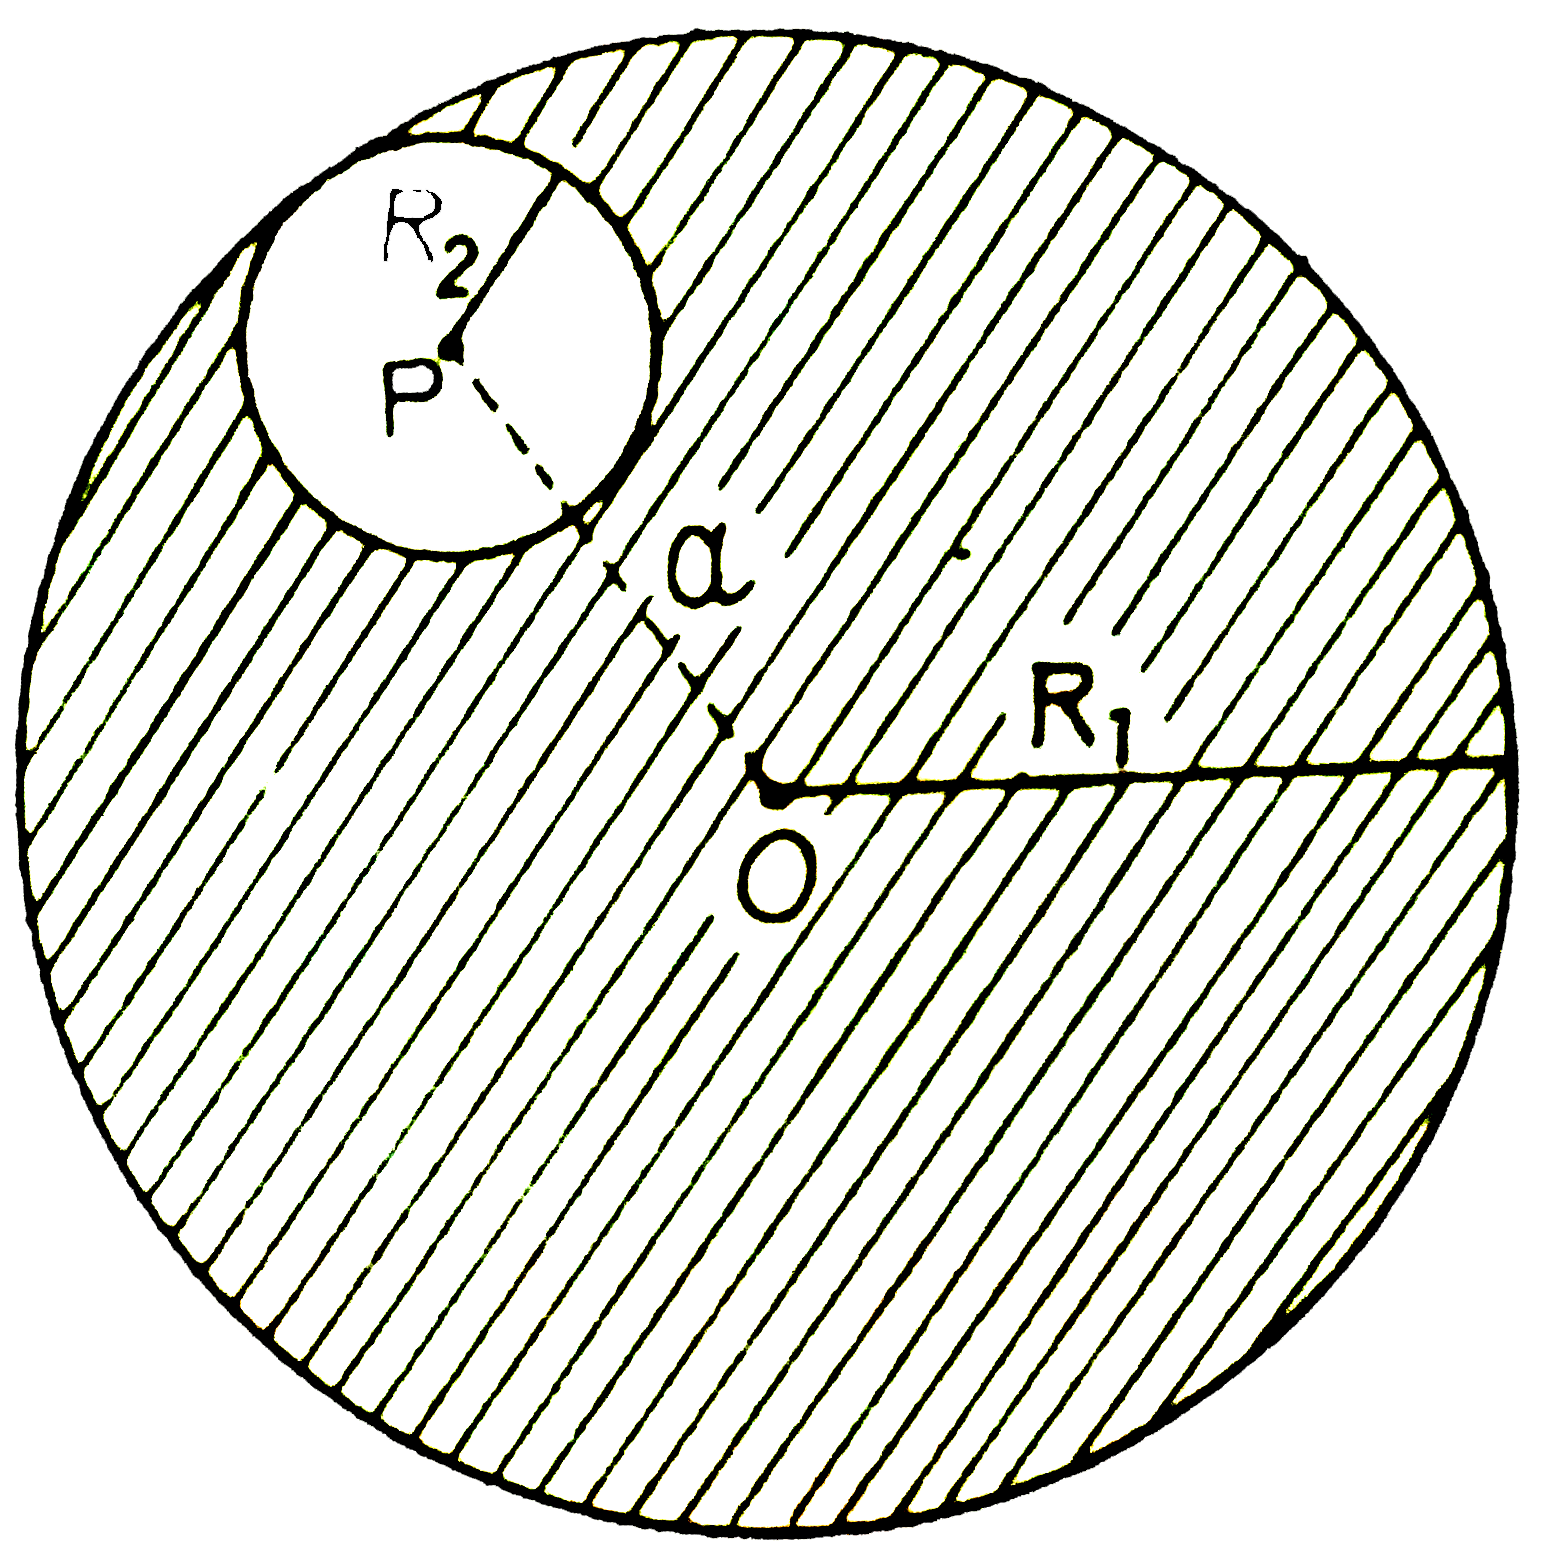 त्रिजिये R(1) का एकसमान आवेश घनत्व का गोलाकार आवेश मूल बिंदु O पर केंद्रित है इस  वितरण में त्रिजिये R(2) तथा P पर केंद्रित एक गोलाकार गुहिका जहाँ दुरी OP a=R(1)-R(2)  है बनाई जाती है  यदि गुहिका  के अंदर इस्थित hat  r पर विधुत क्षेत्र hat E है तब सही कथन है